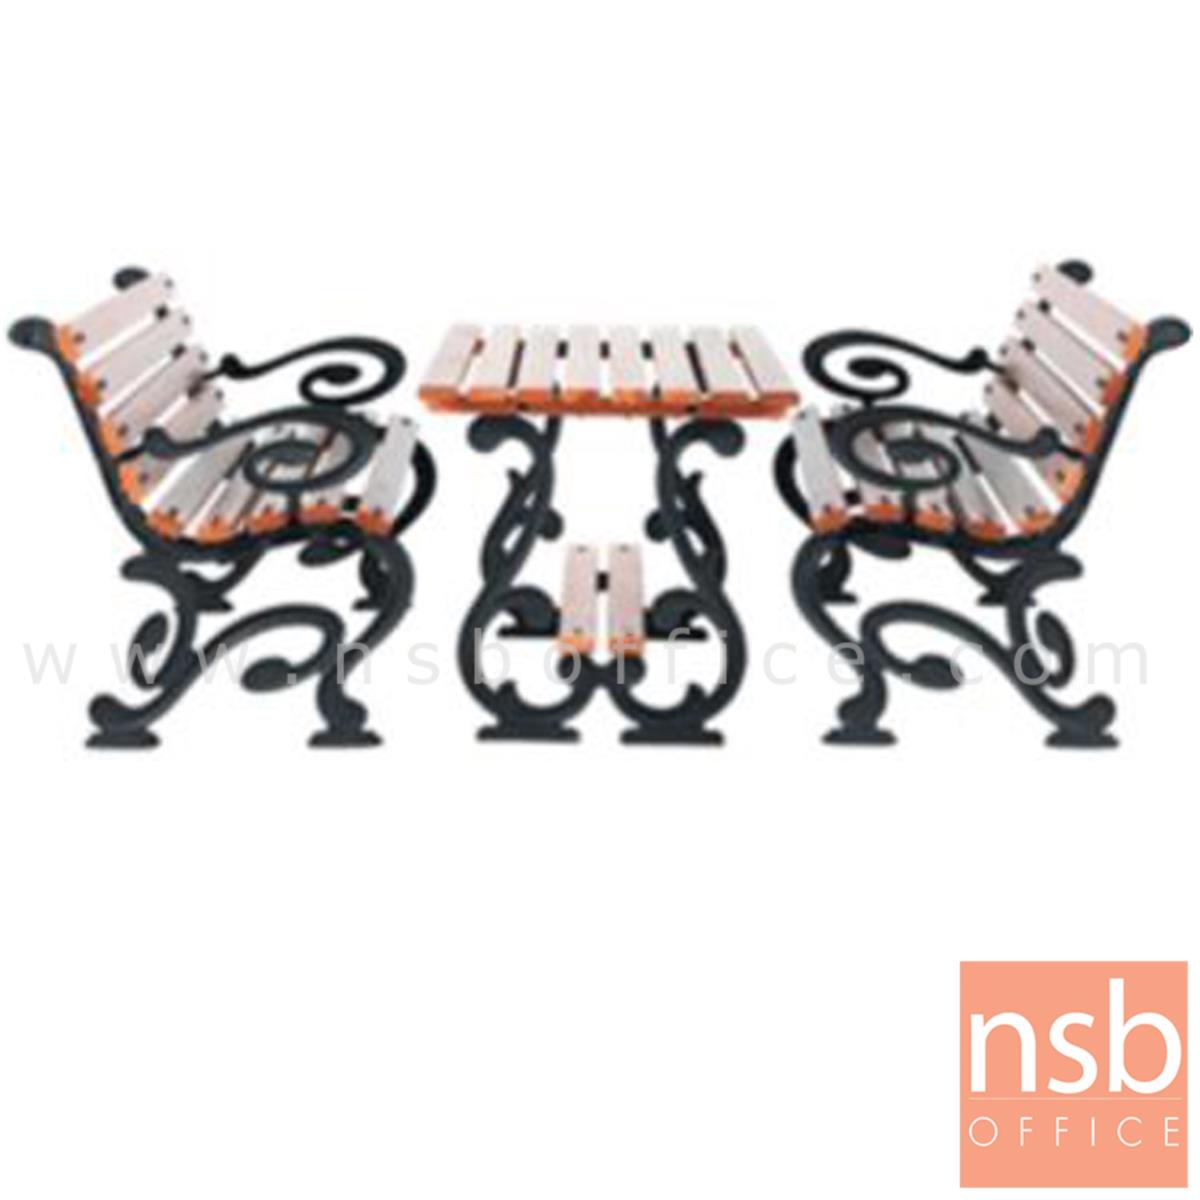 G08A046:ชุดโต๊ะสนาม พร้อมเก้าอี้ กทม. BKK-COT422 (โต๊ะ 1 + เก้าอี้ 2)   